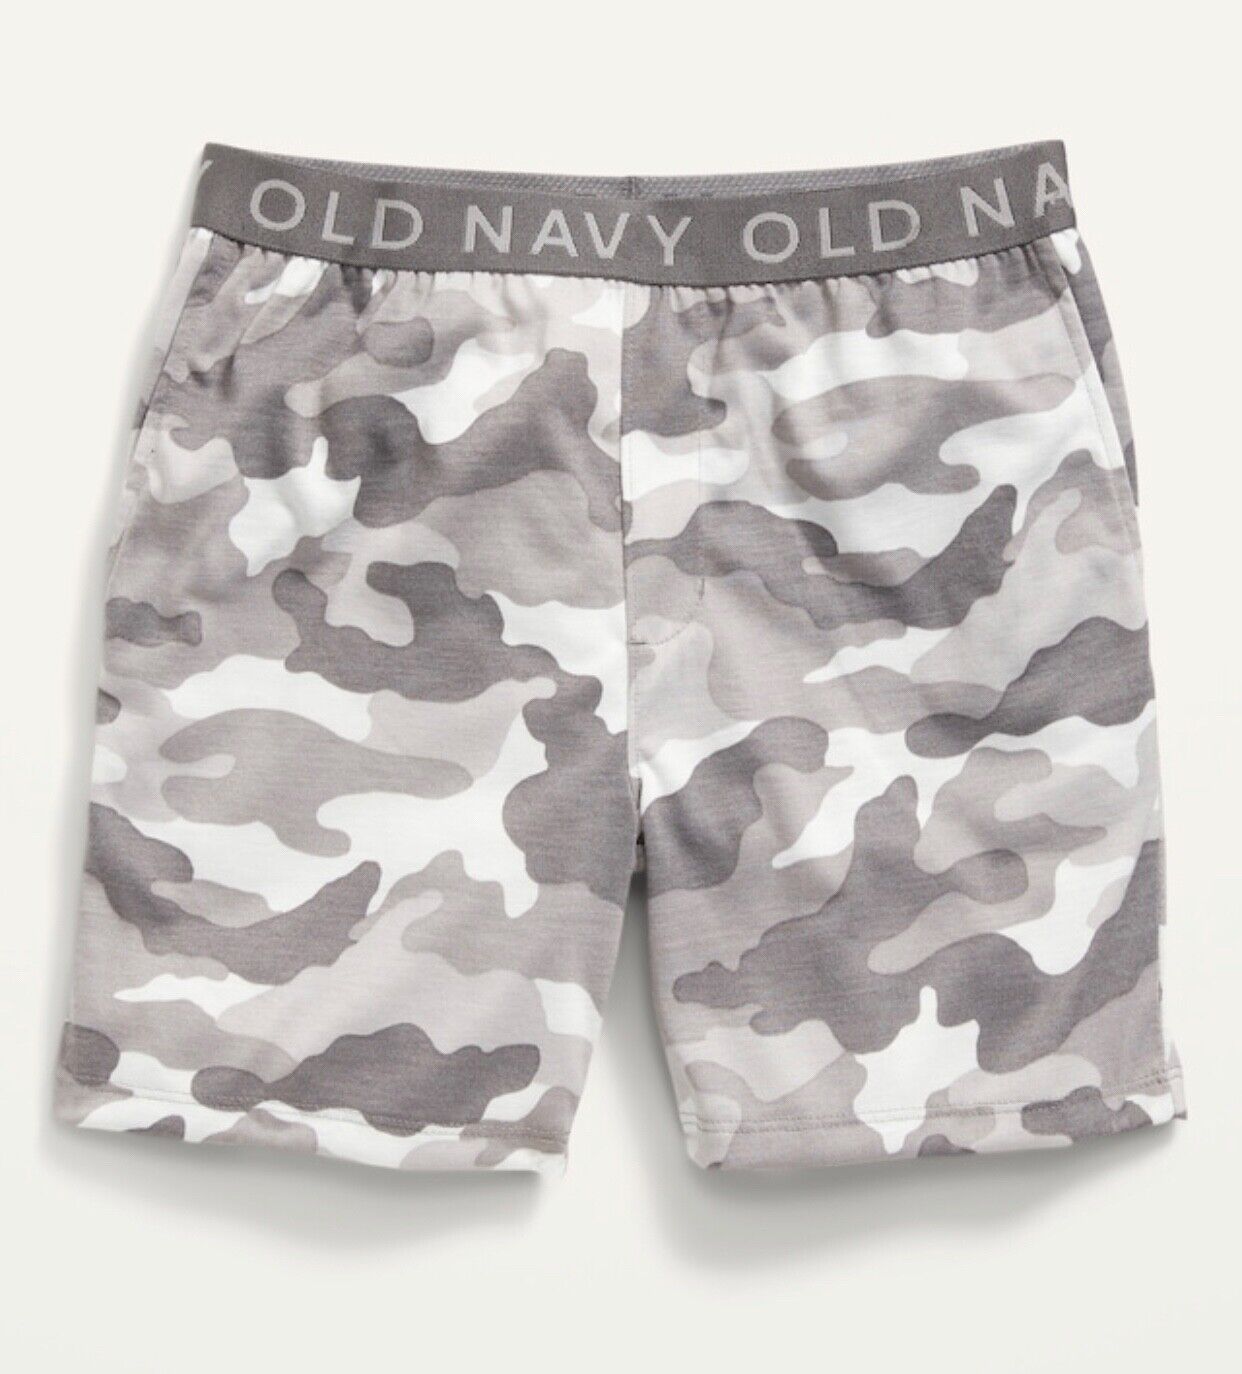 Old Navy Kid Boys Size Xl (14-16) Gray Camo ~ Pajama Shorts .. $15 .. Nwt